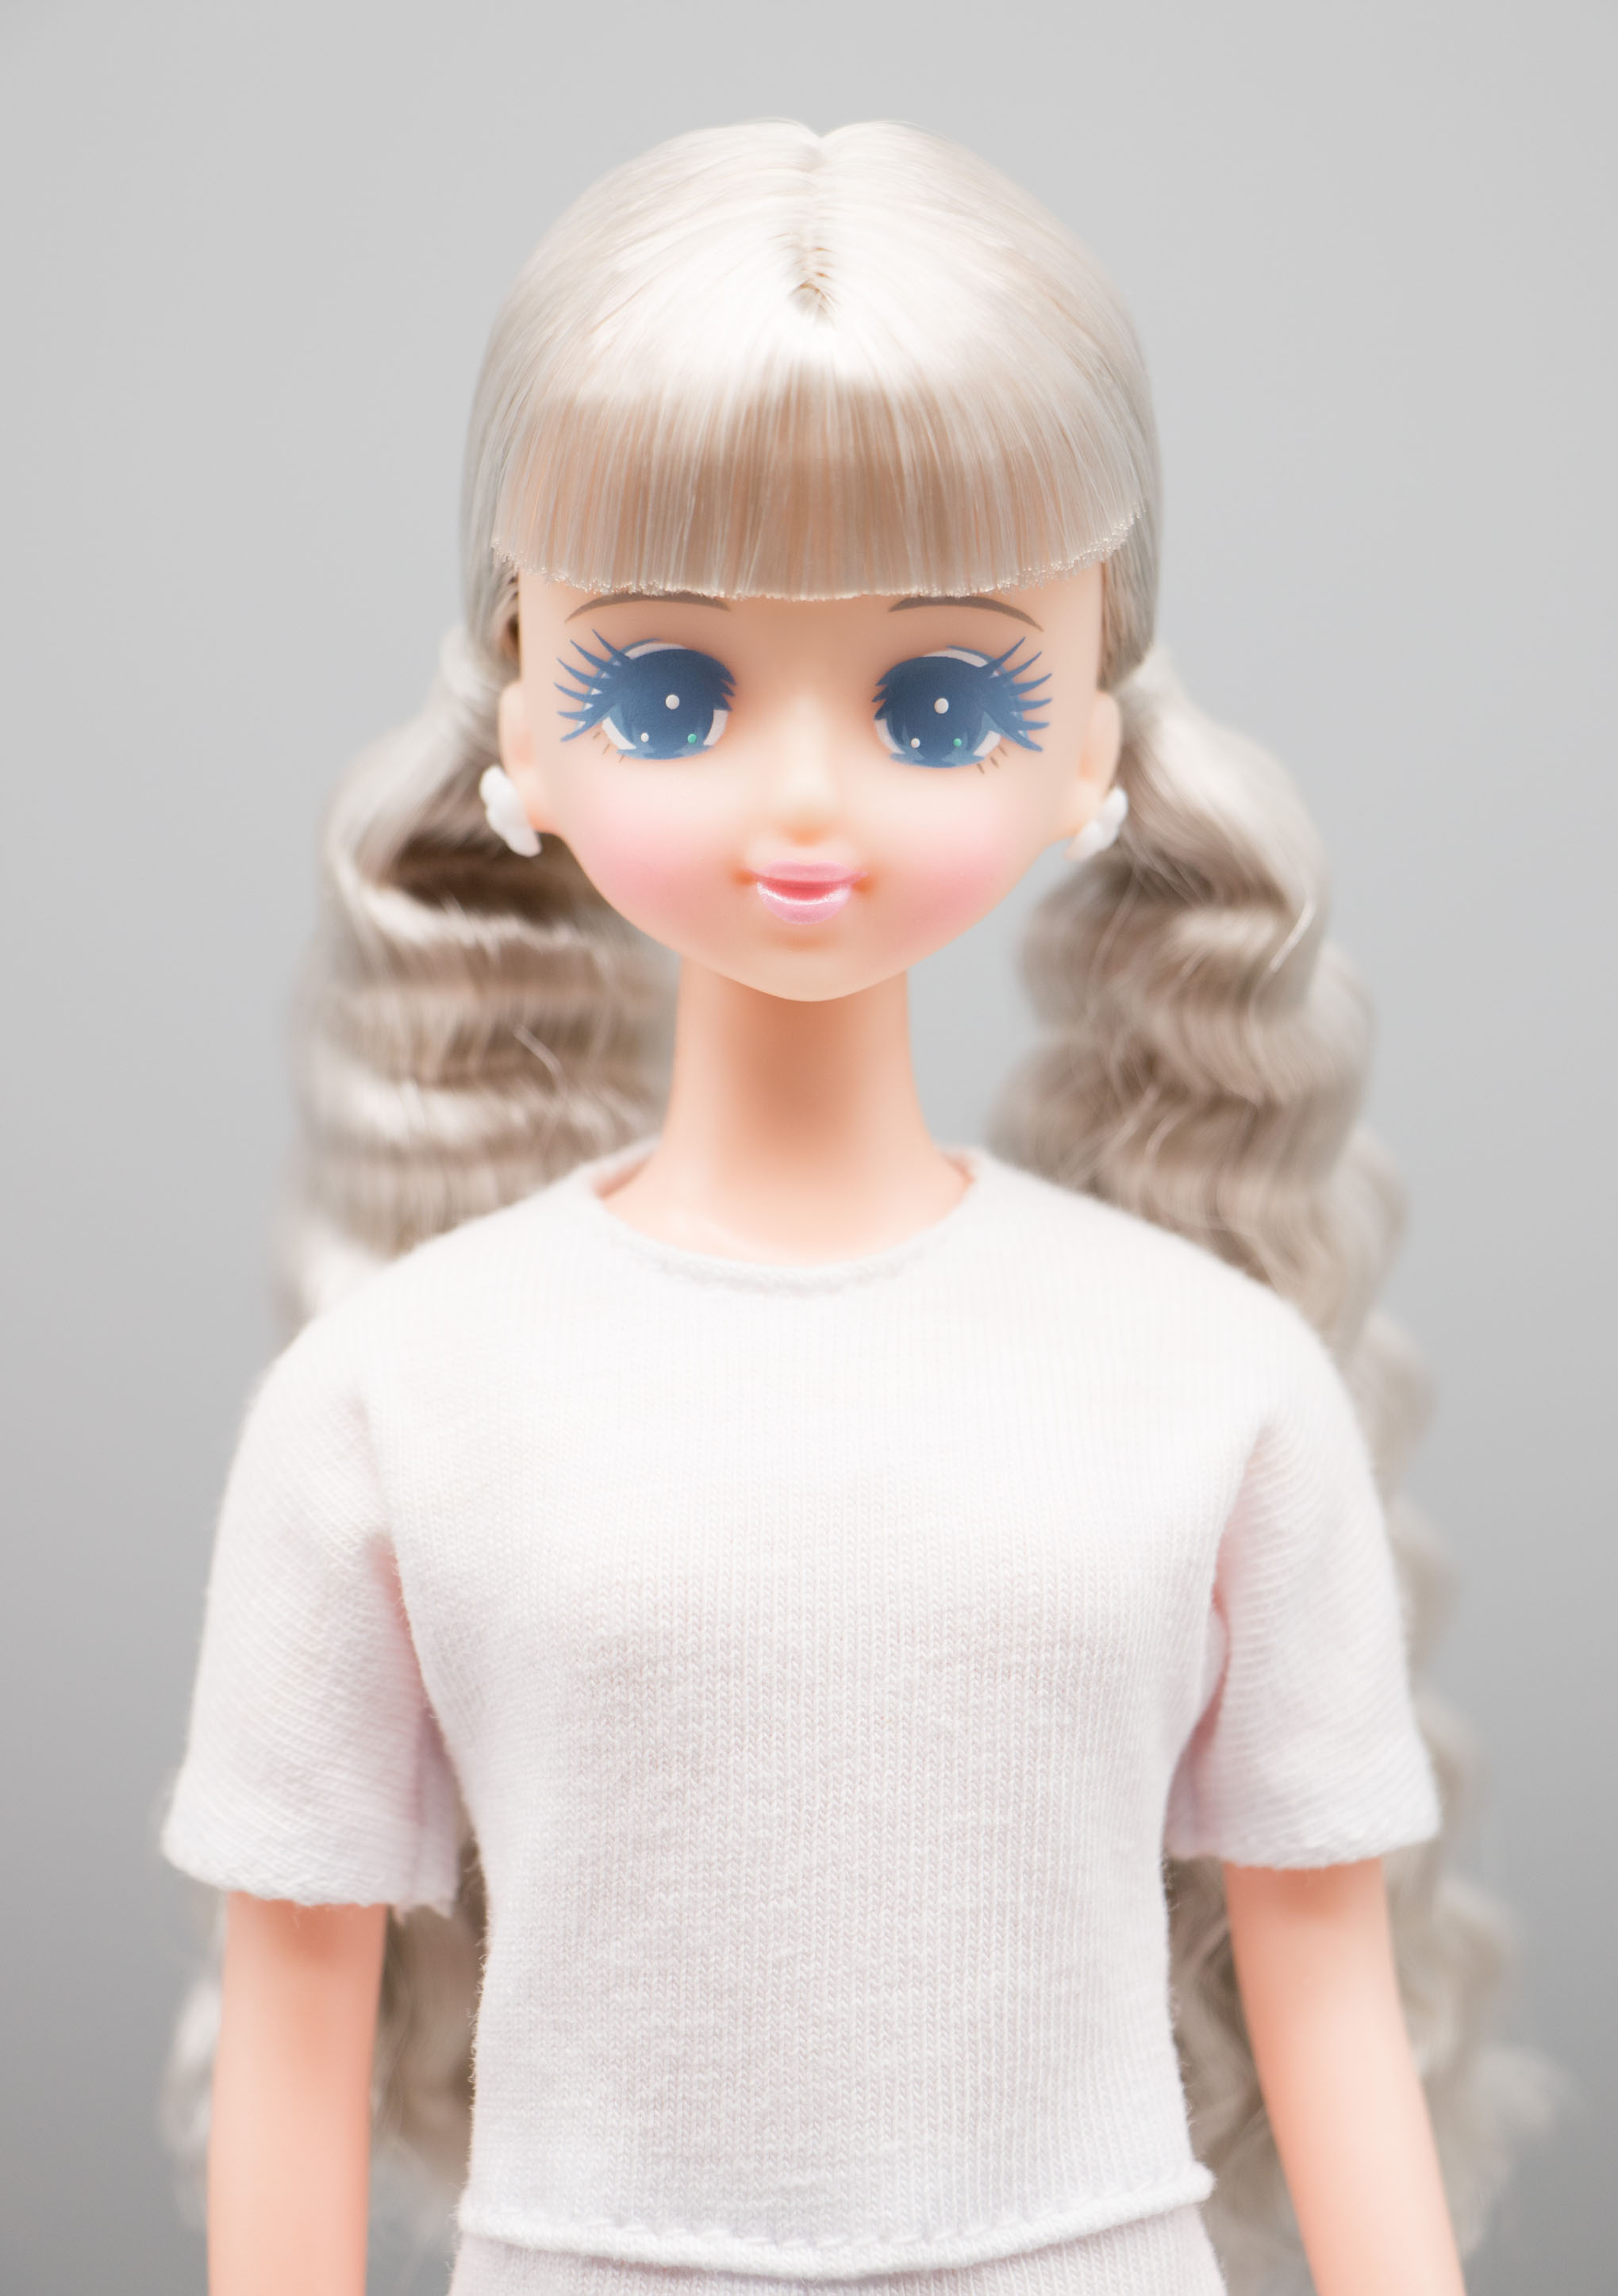 購入しましたが レア オリジナルドール プラスチックケース入り ジェニー他 リカちゃんキャッスル おもちゃ/人形